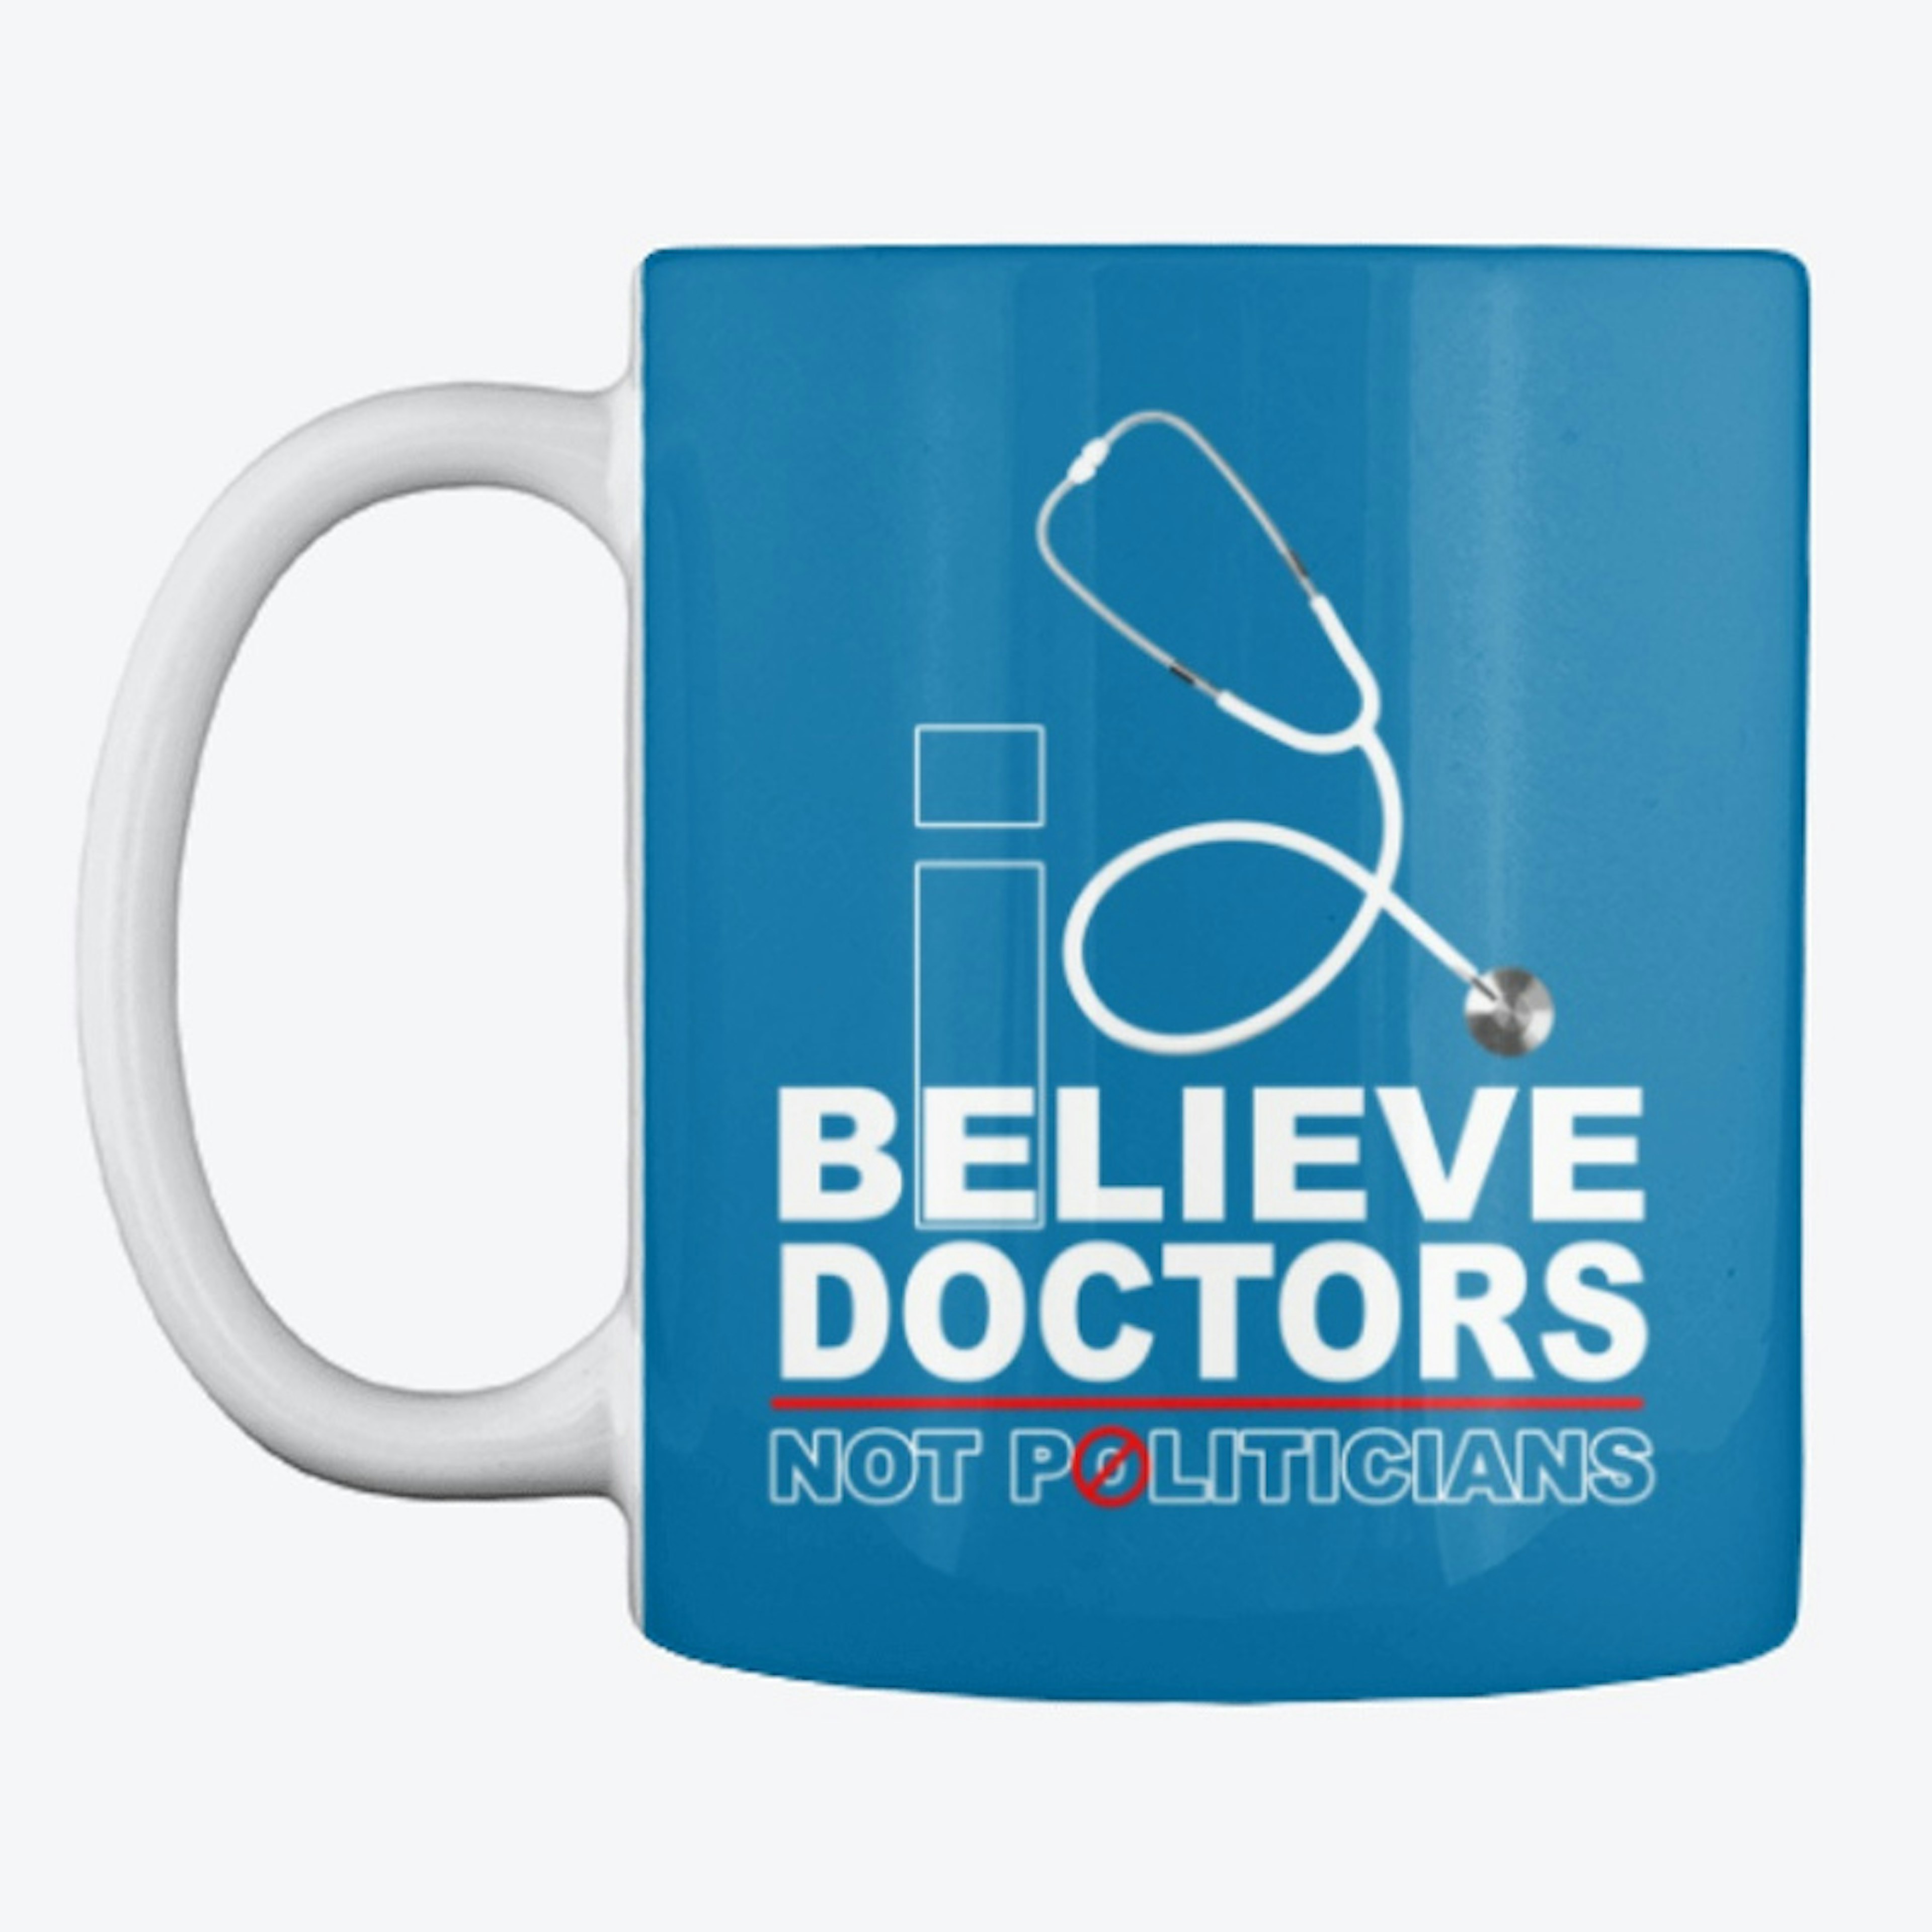 I Believe Doctors